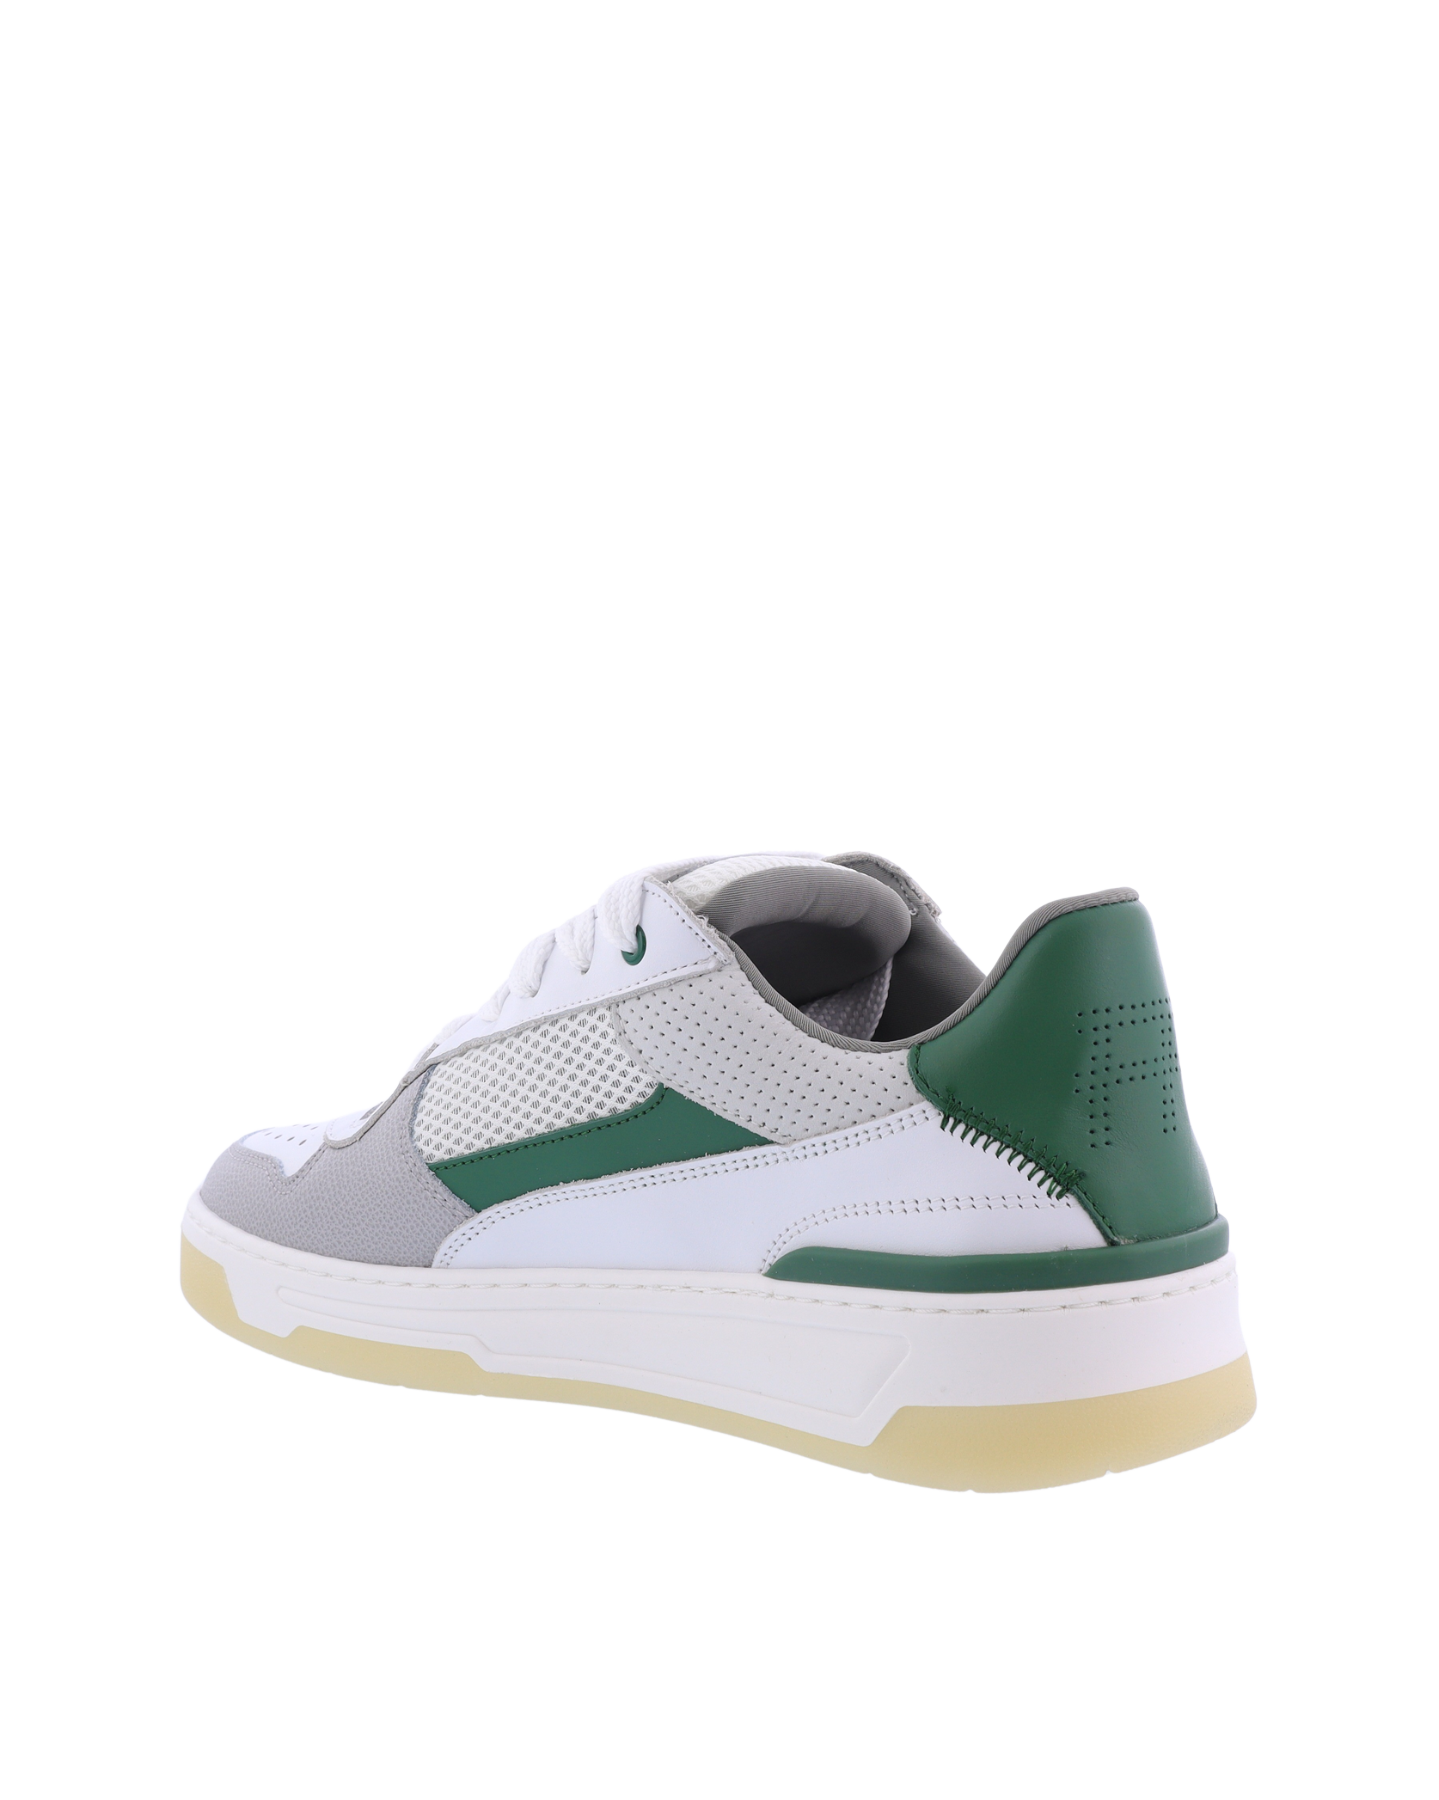 Heren Cruiser Sneaker Wit/Groen